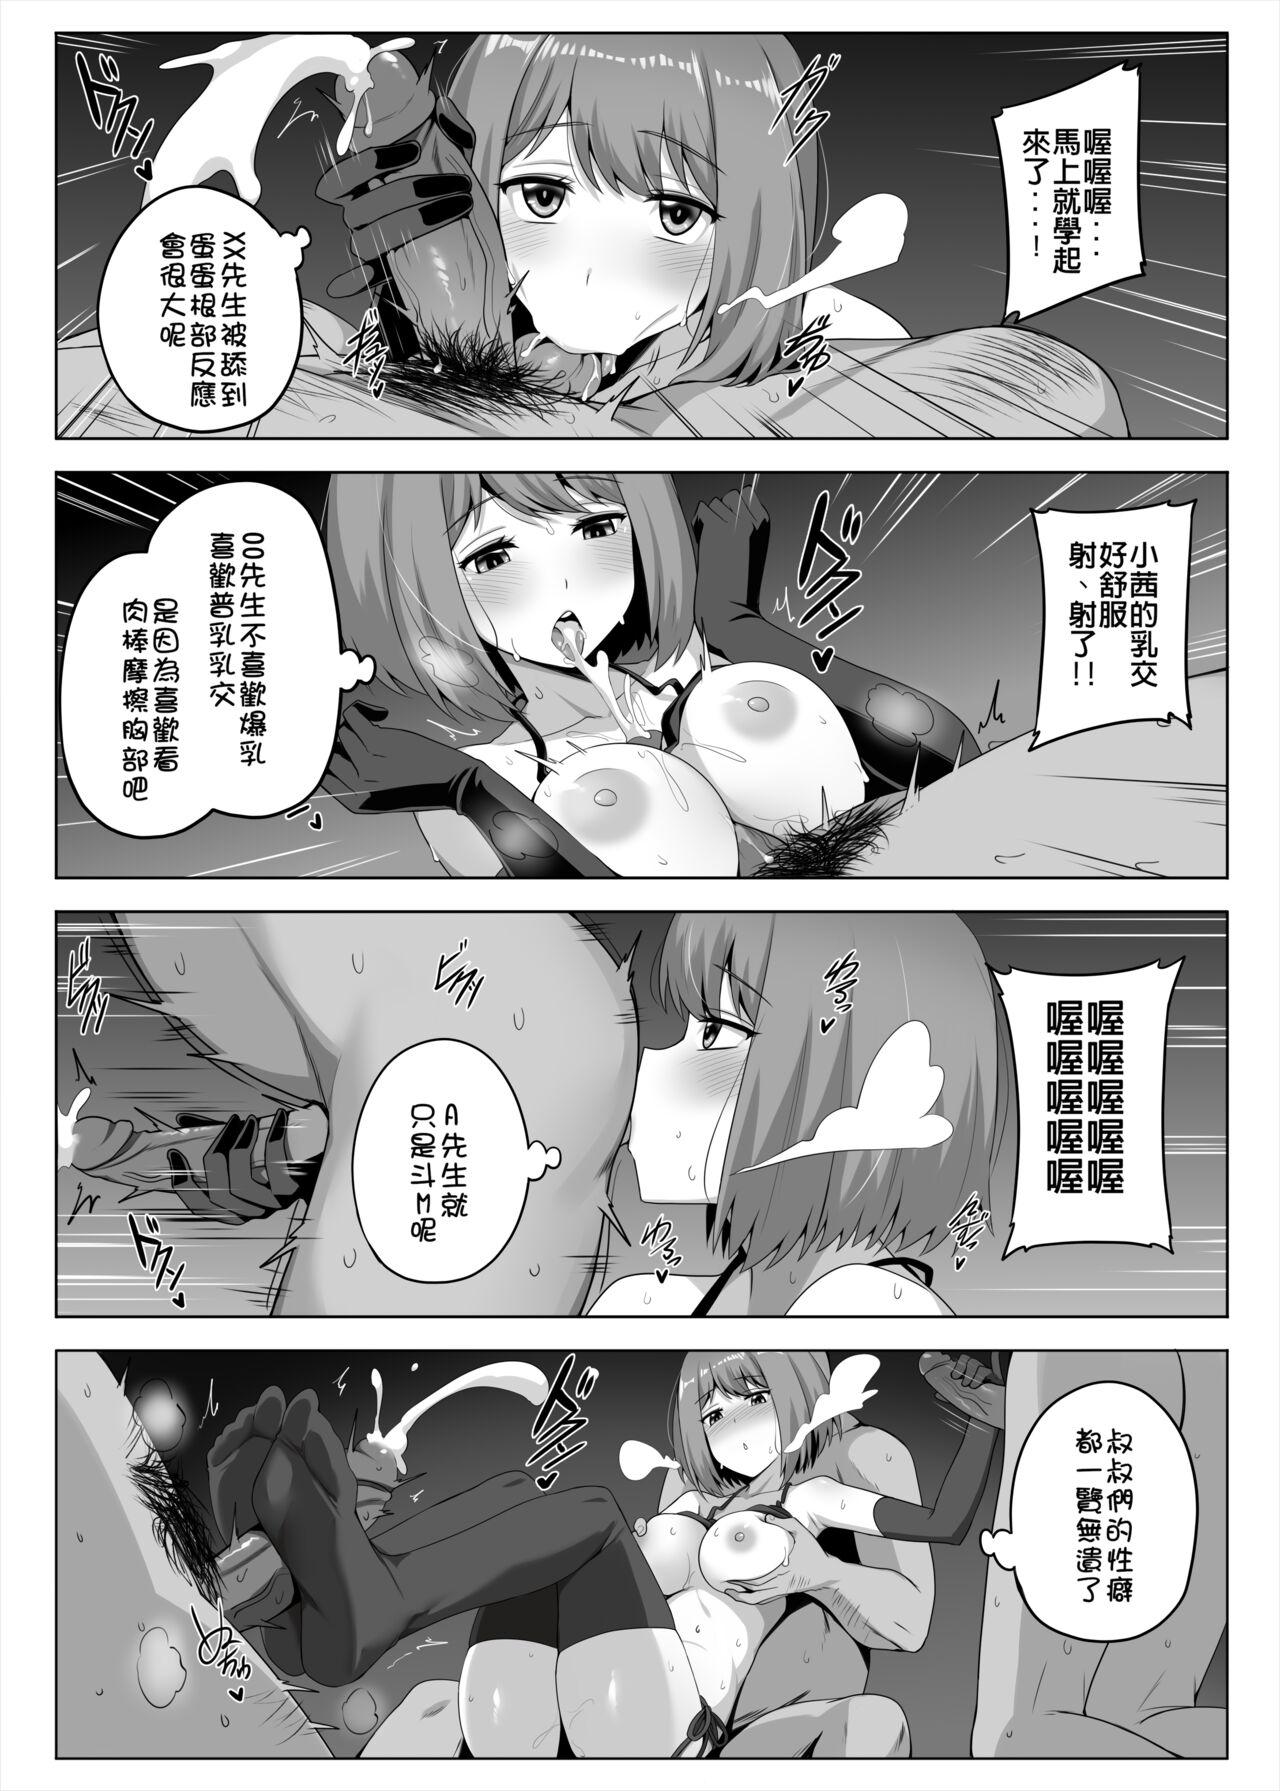 Orgy Makura Eigyoushi no Ko - Oshi no ko Sex - Page 8